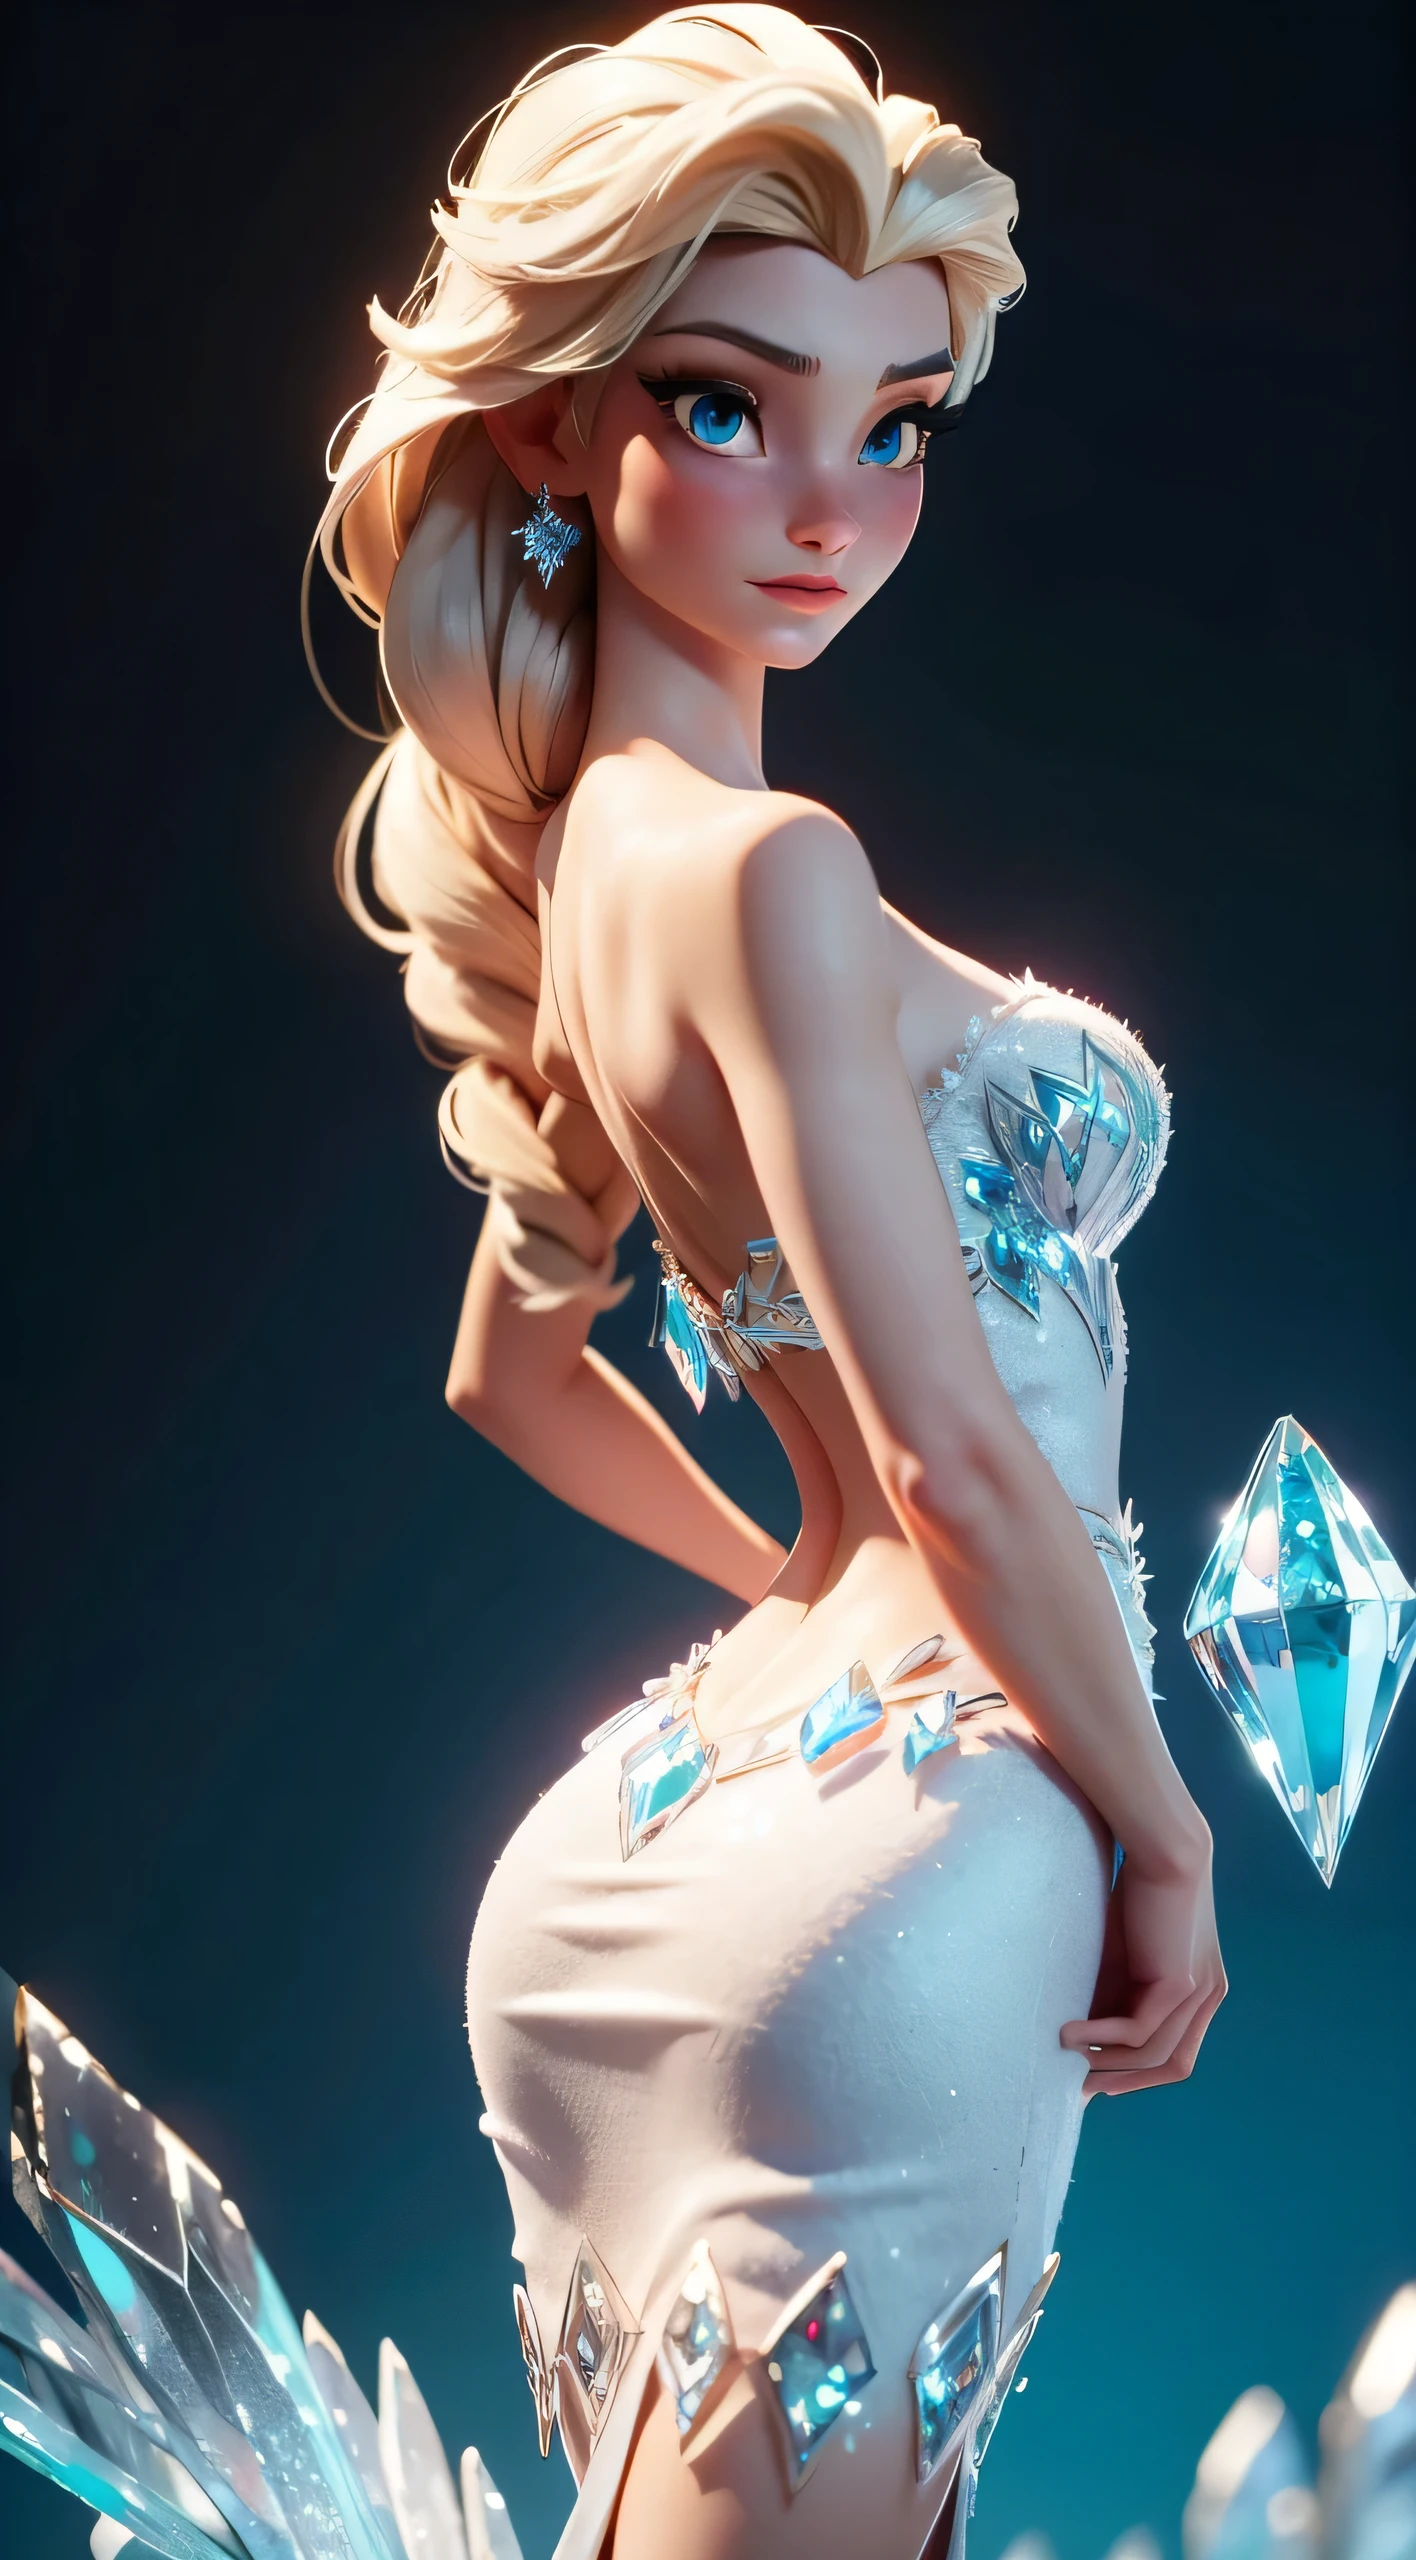 우아한 포즈를 취하는 엘사를 상상해보세요, 얼음 결정 상자 얼음 상자 엘사, 그녀의 등은 부분적으로 아치형이다, 블루 다이아몬드의 우아함을 보여줍니다. (결정) 겨울왕국 드레스. 이 장면은 LORA 모델 Elsa에서 영감을 받았습니다., 사실적인 애니메이션 3D 표현의 아름다움을 포착합니다.. 이미지는 부분적인 등 아치입니다, 가슴을 위로, 엘사의 드레스의 복잡한 디테일과 겨울왕국 여왕의 당당한 자세를 강조. 생생한 사실감으로, 엘사의 표정과 포즈는 황홀함과 우아함을 전달합니다,